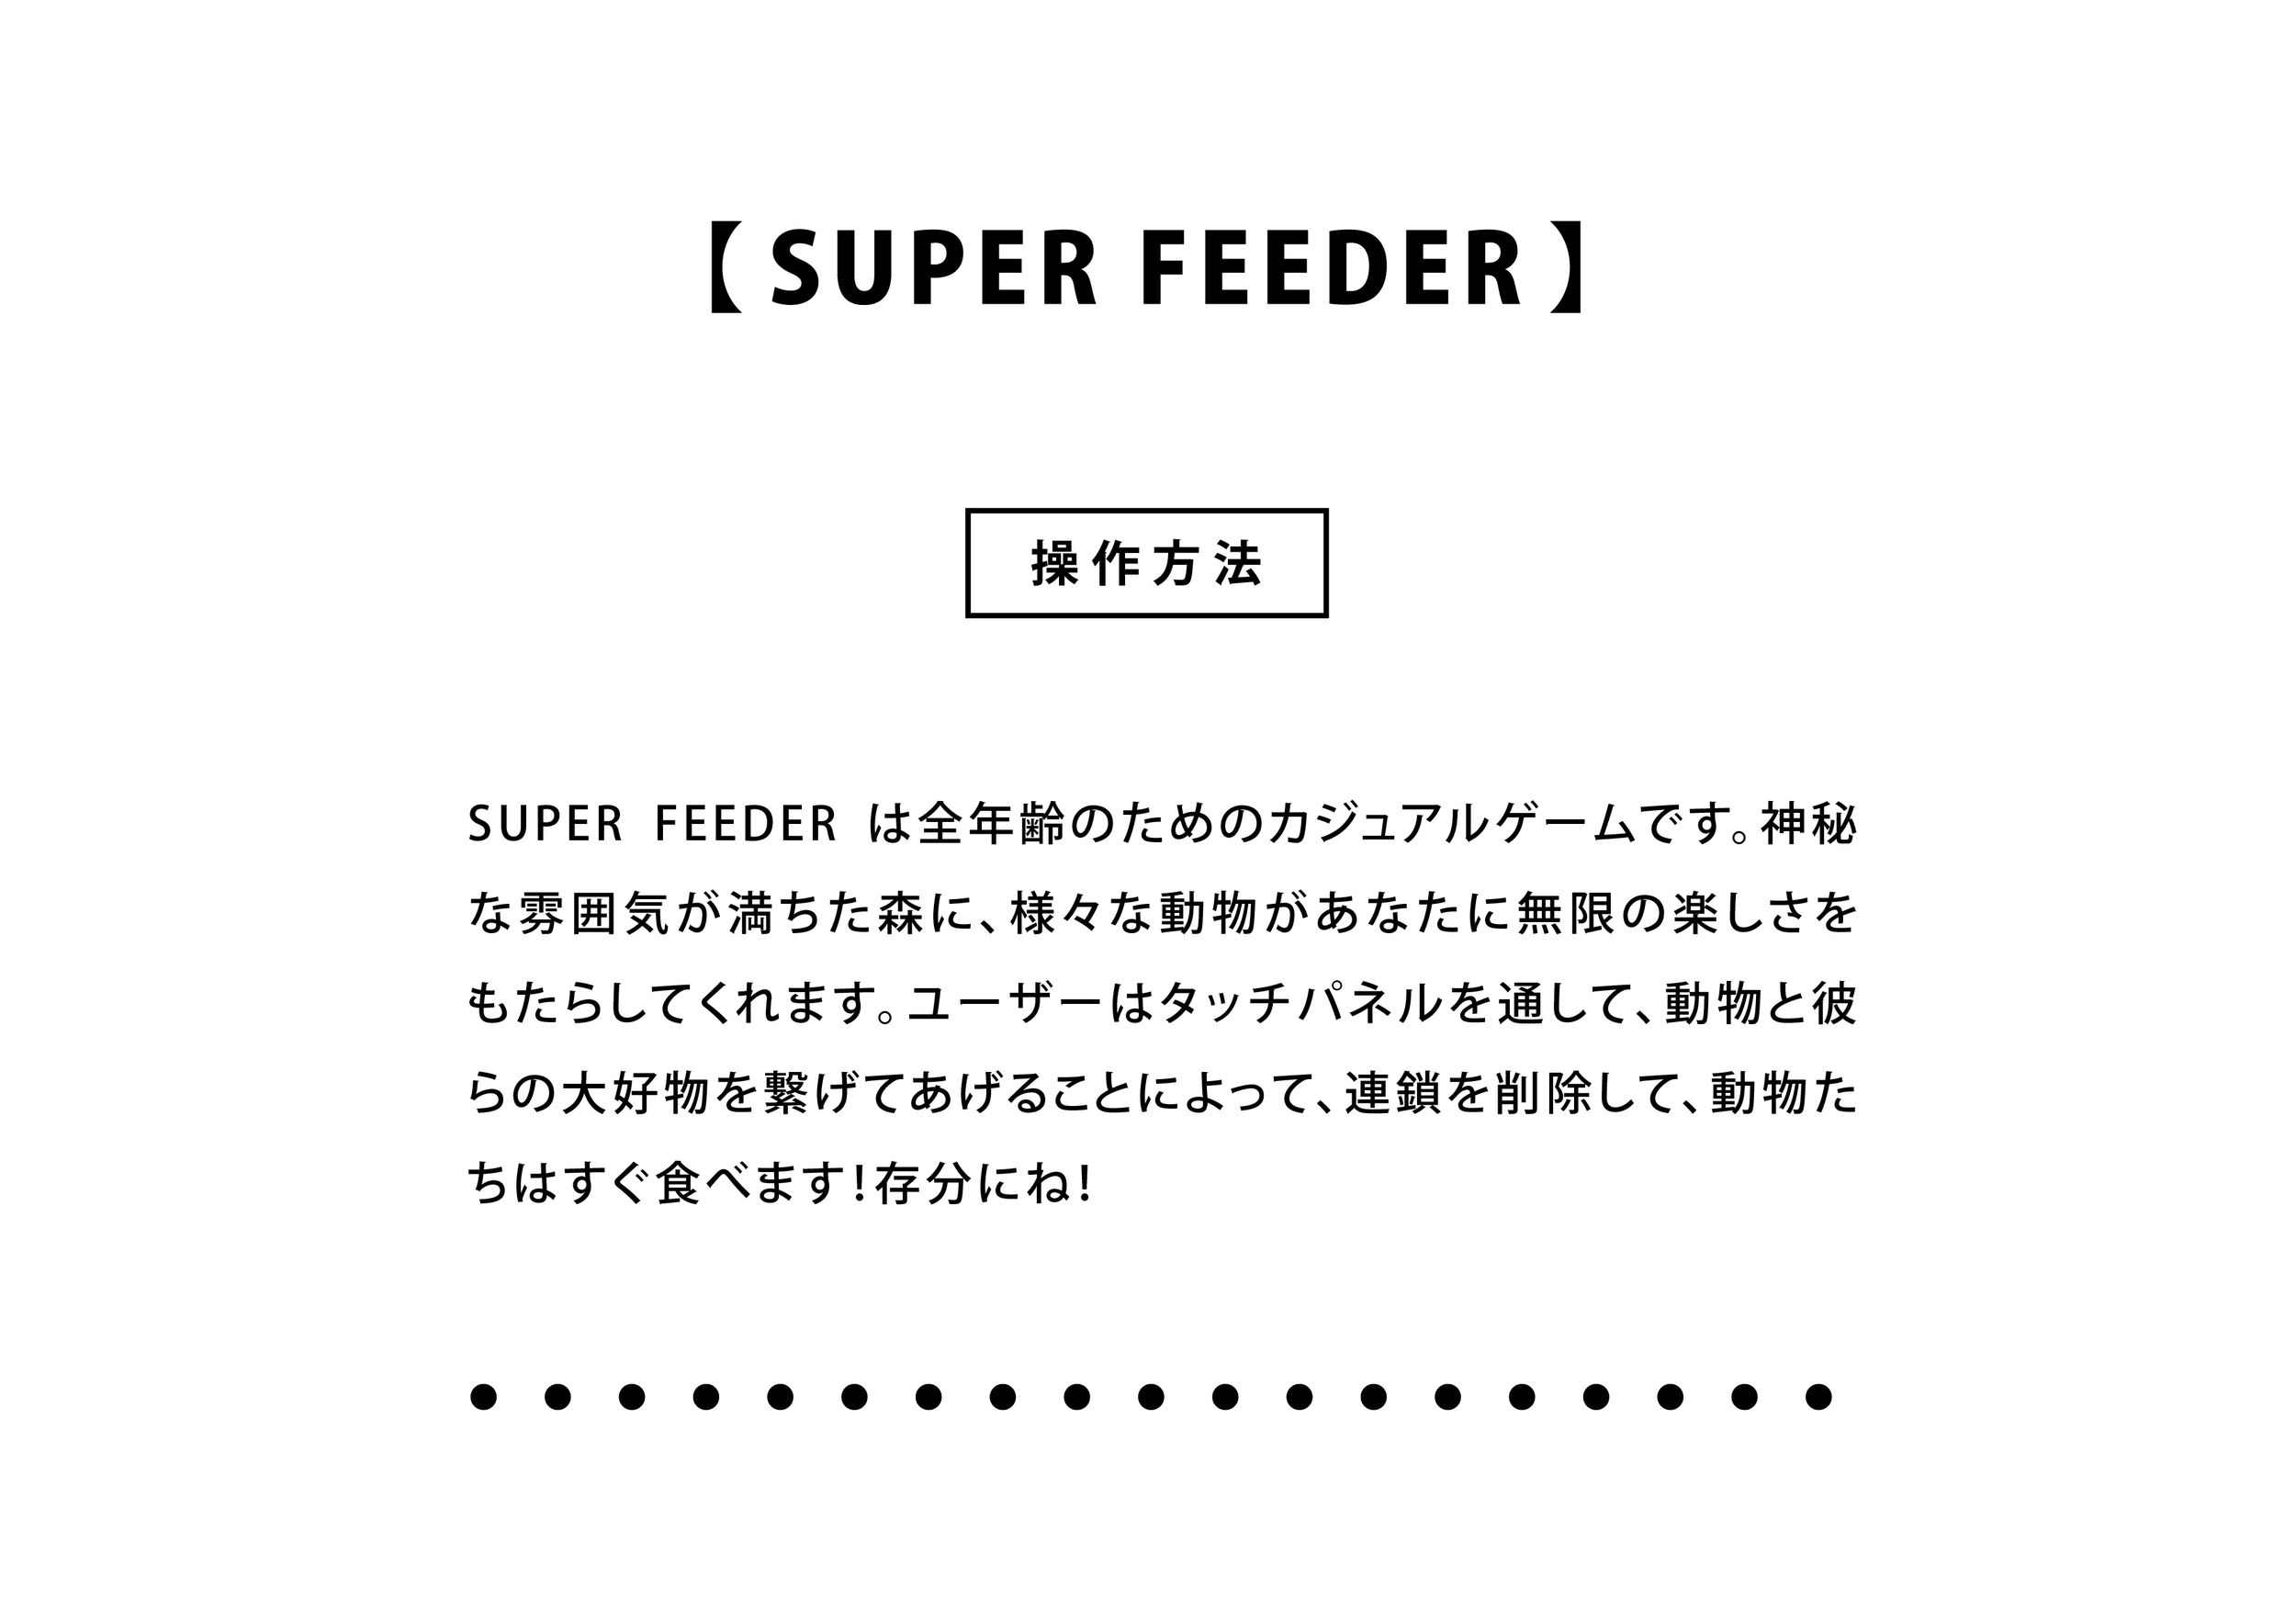 Promotion Kits_Super Feeder-07.png